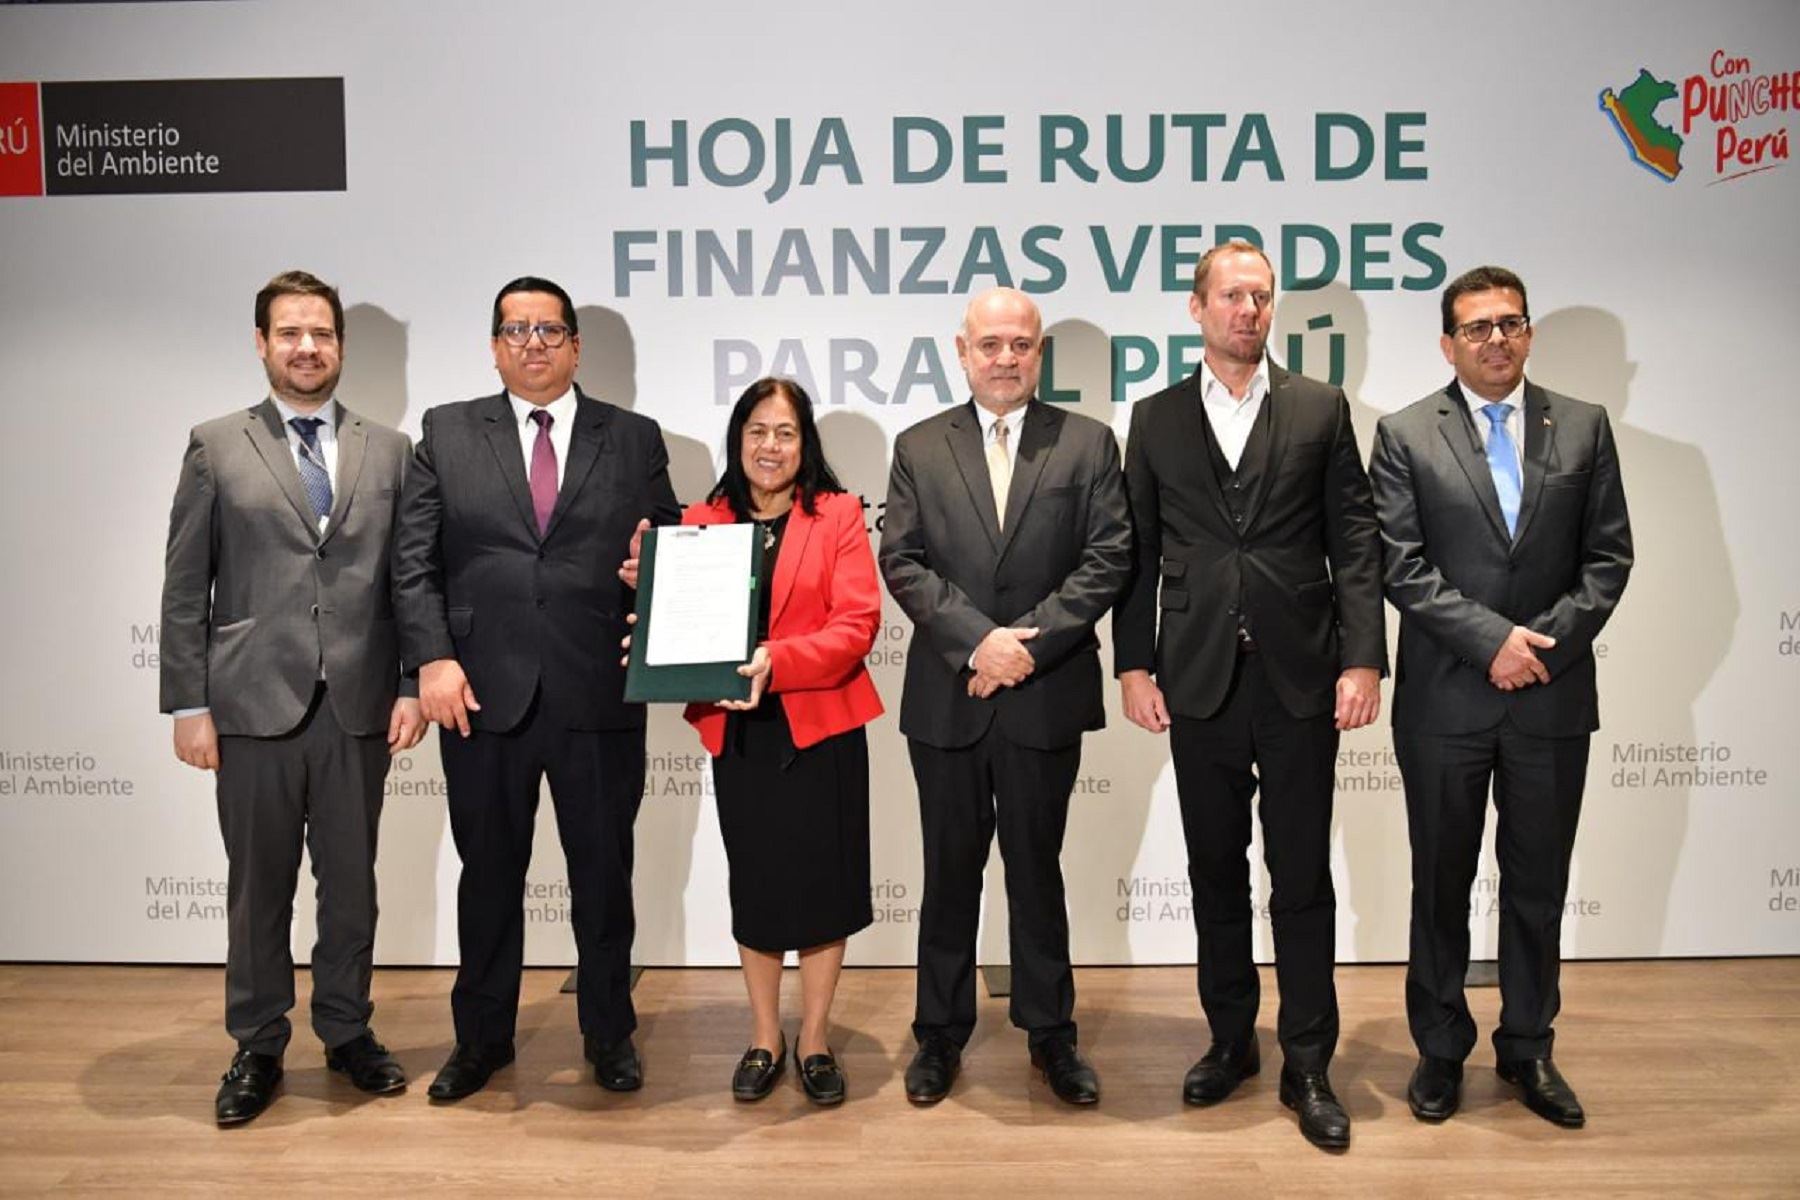 Presentación de la Hoja de Ruta de Finanzas Verdes para el Perú.